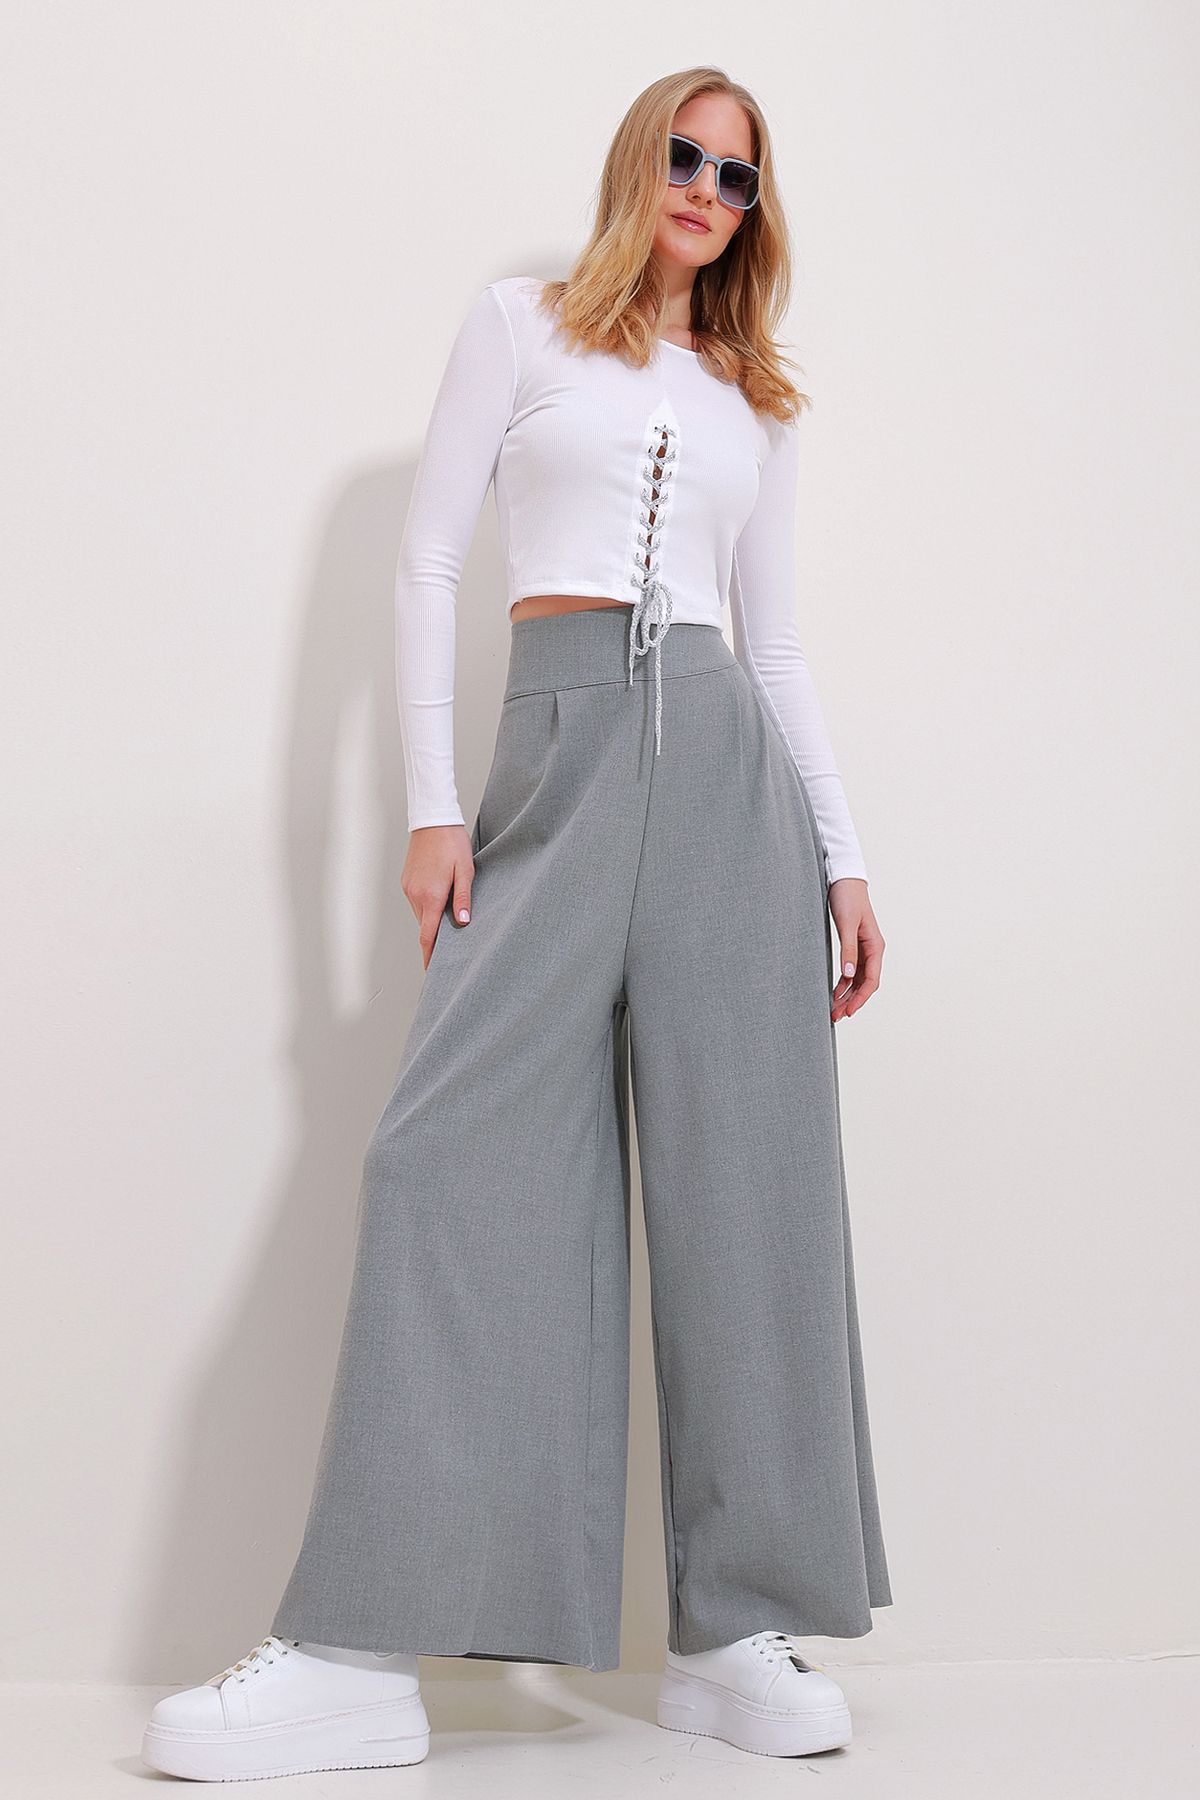 Trend Alaçatı Stili Kadın Gri Yüksek Bel Yanı Fermuarlı Bol Paça Dokuma Pantolon ALC-X11491